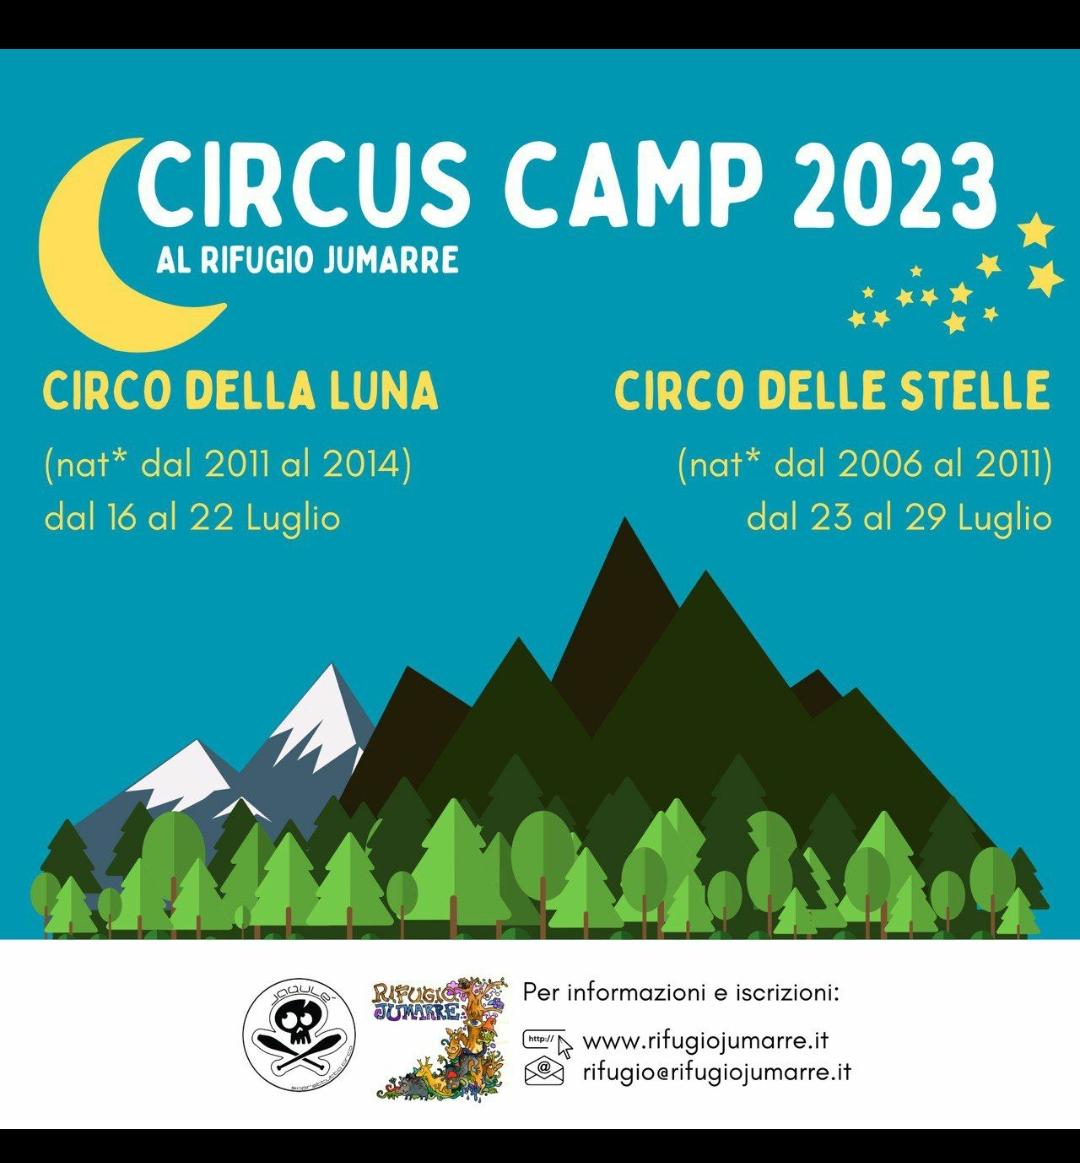 Circus Camp 2023